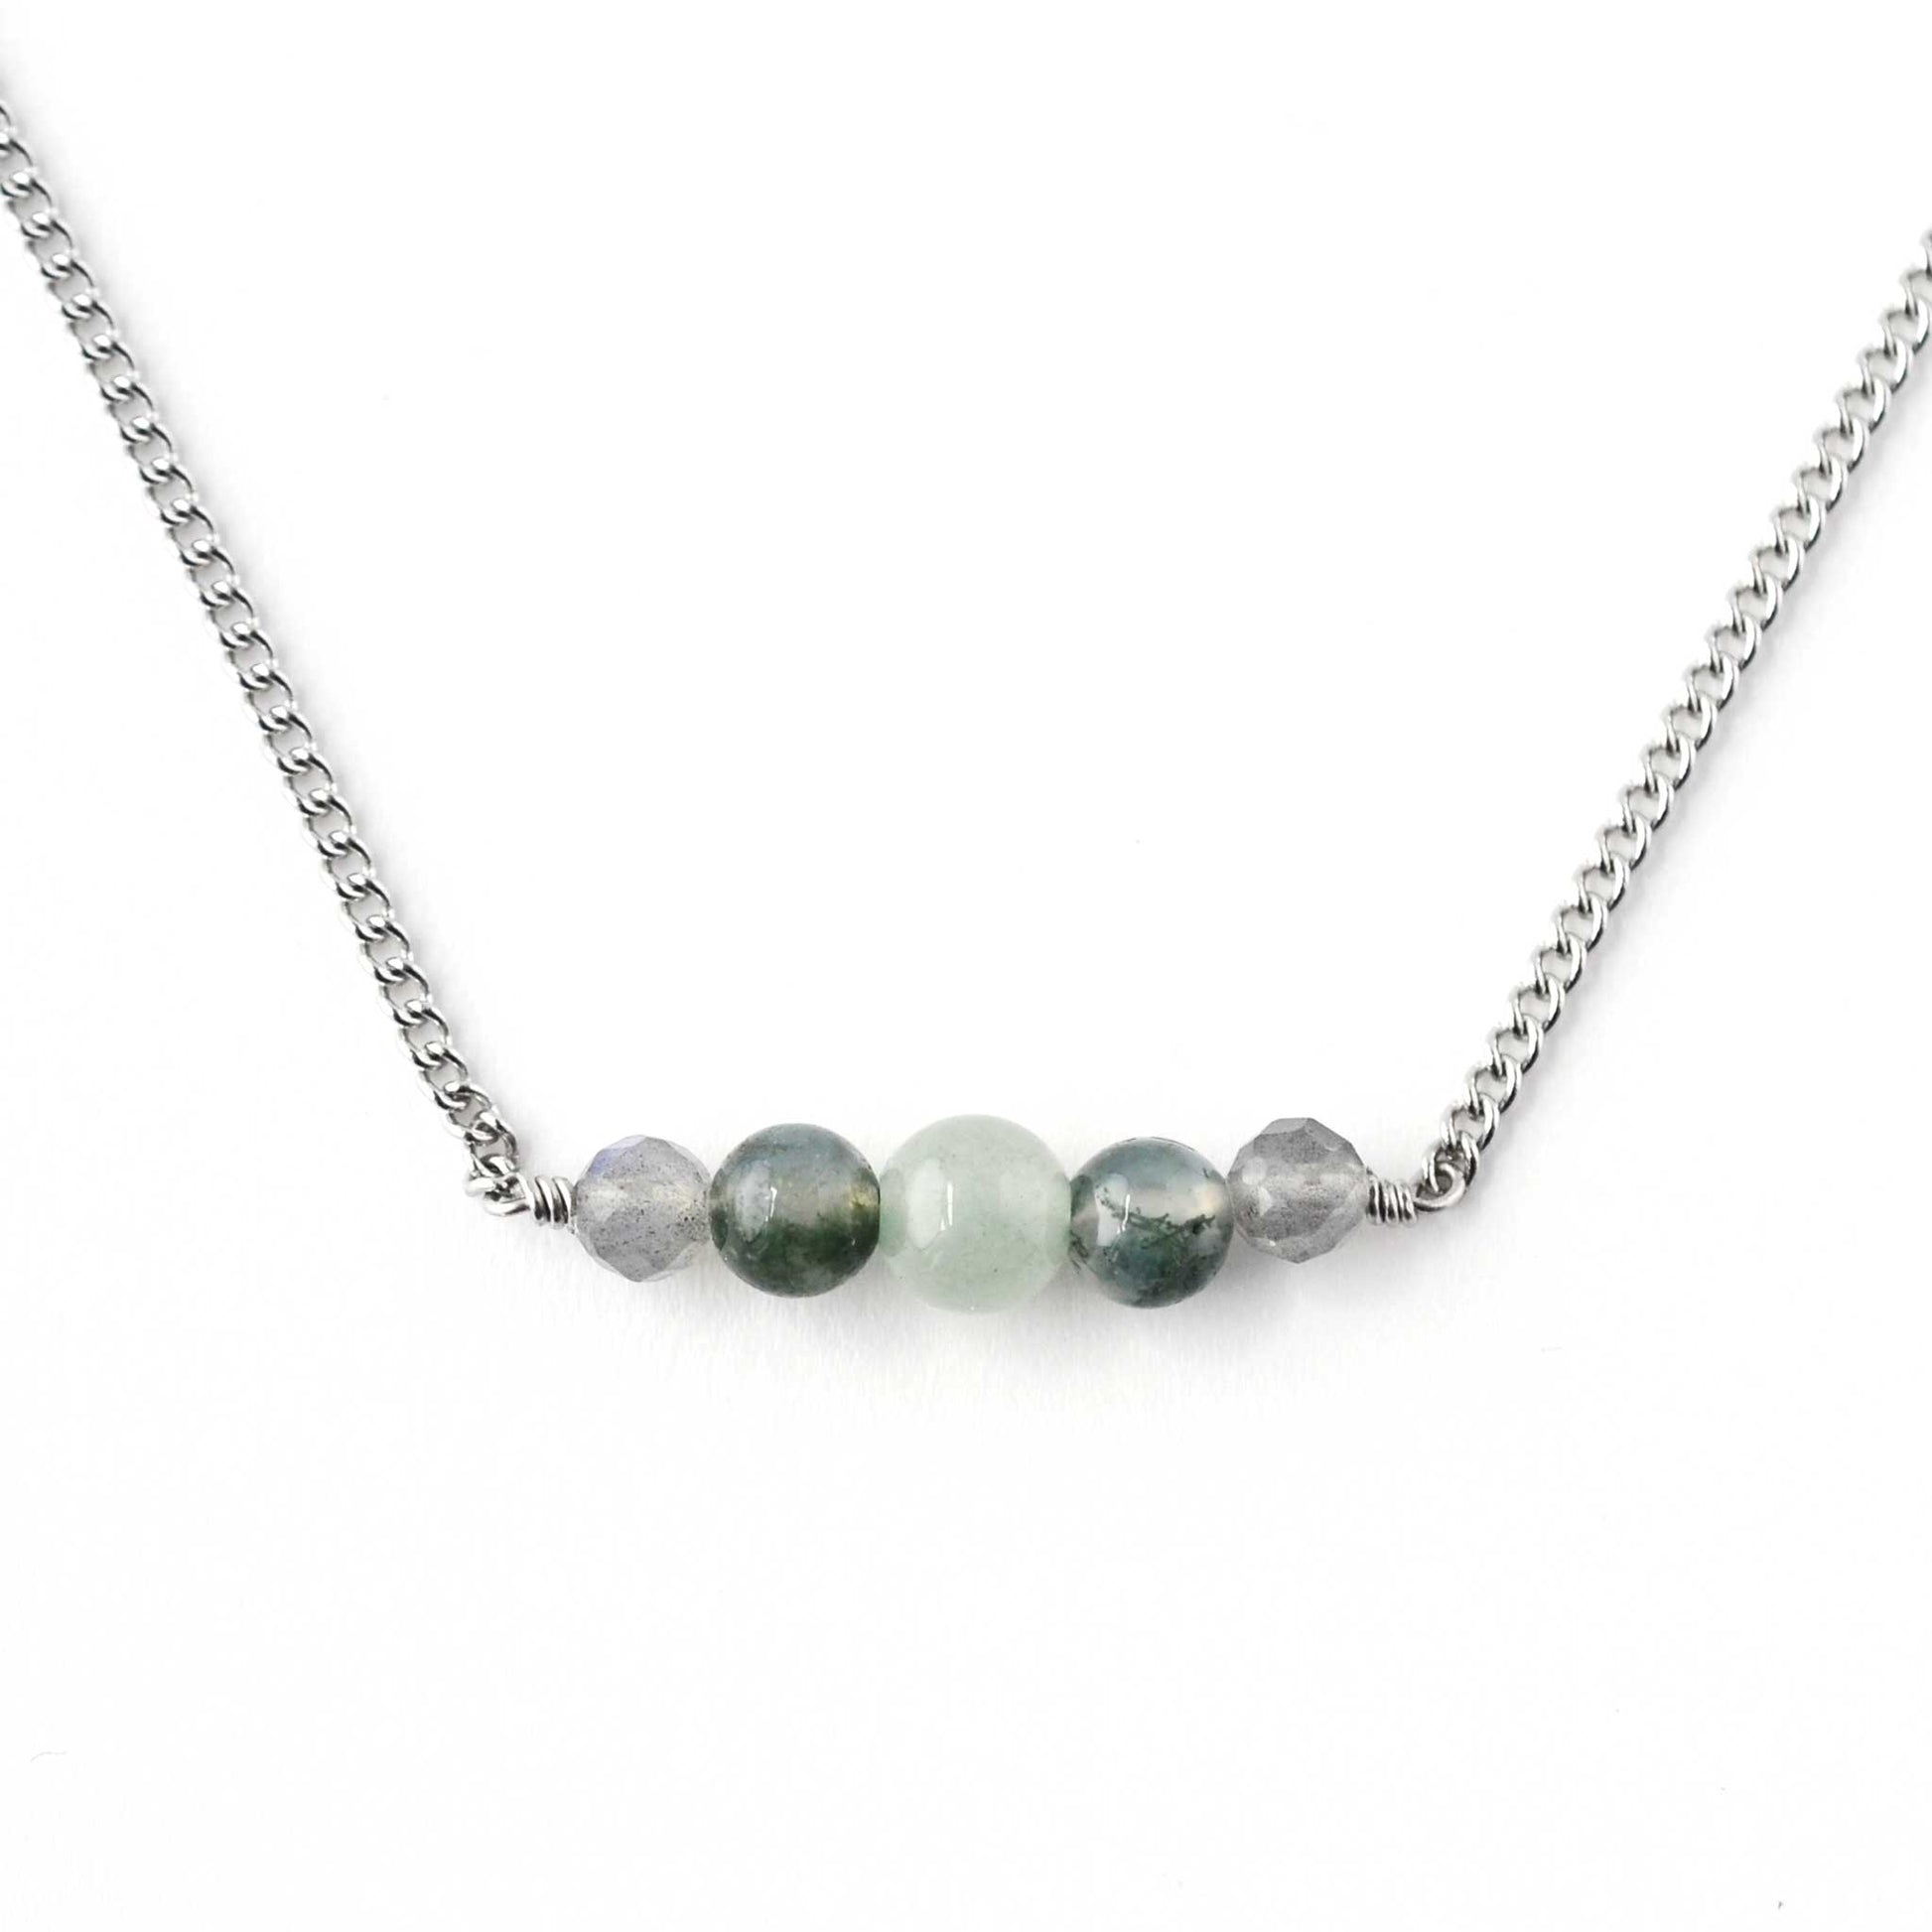 Green Aventurine, Moss Agate & Labradorite gemstone necklace on white background